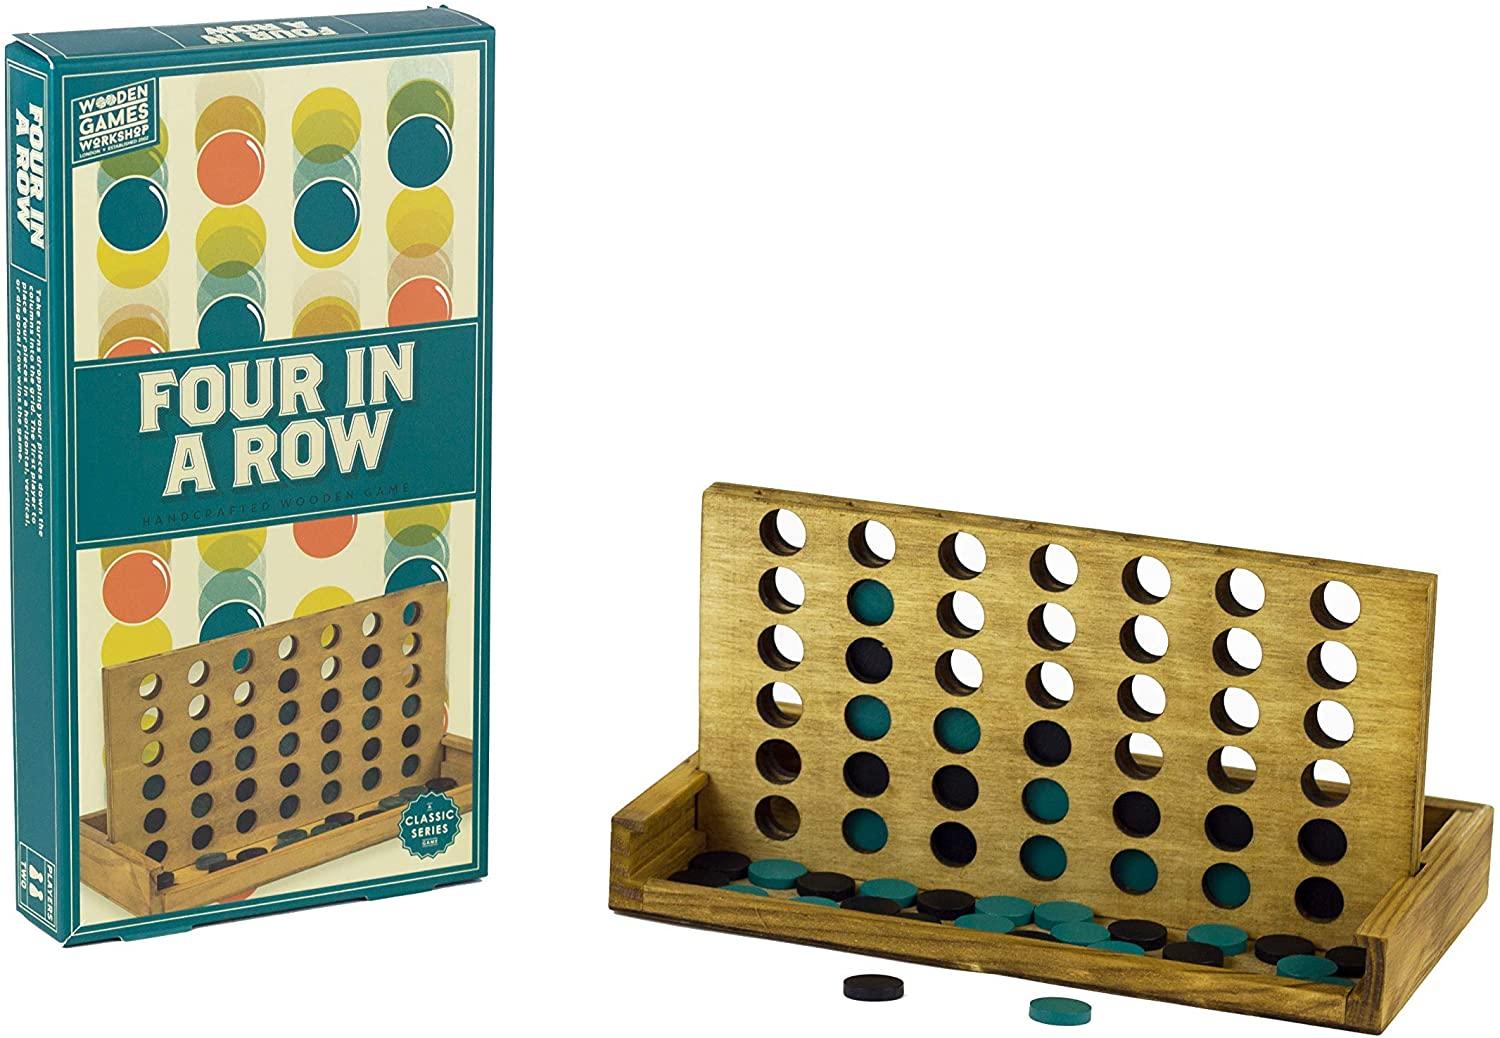 لعبة أربعة في الصف الكلاسيكية Professor Puzzle - WOODEN FOUR-IN-A-ROW Classic Board Game - cG9zdDo1ODI0MA==